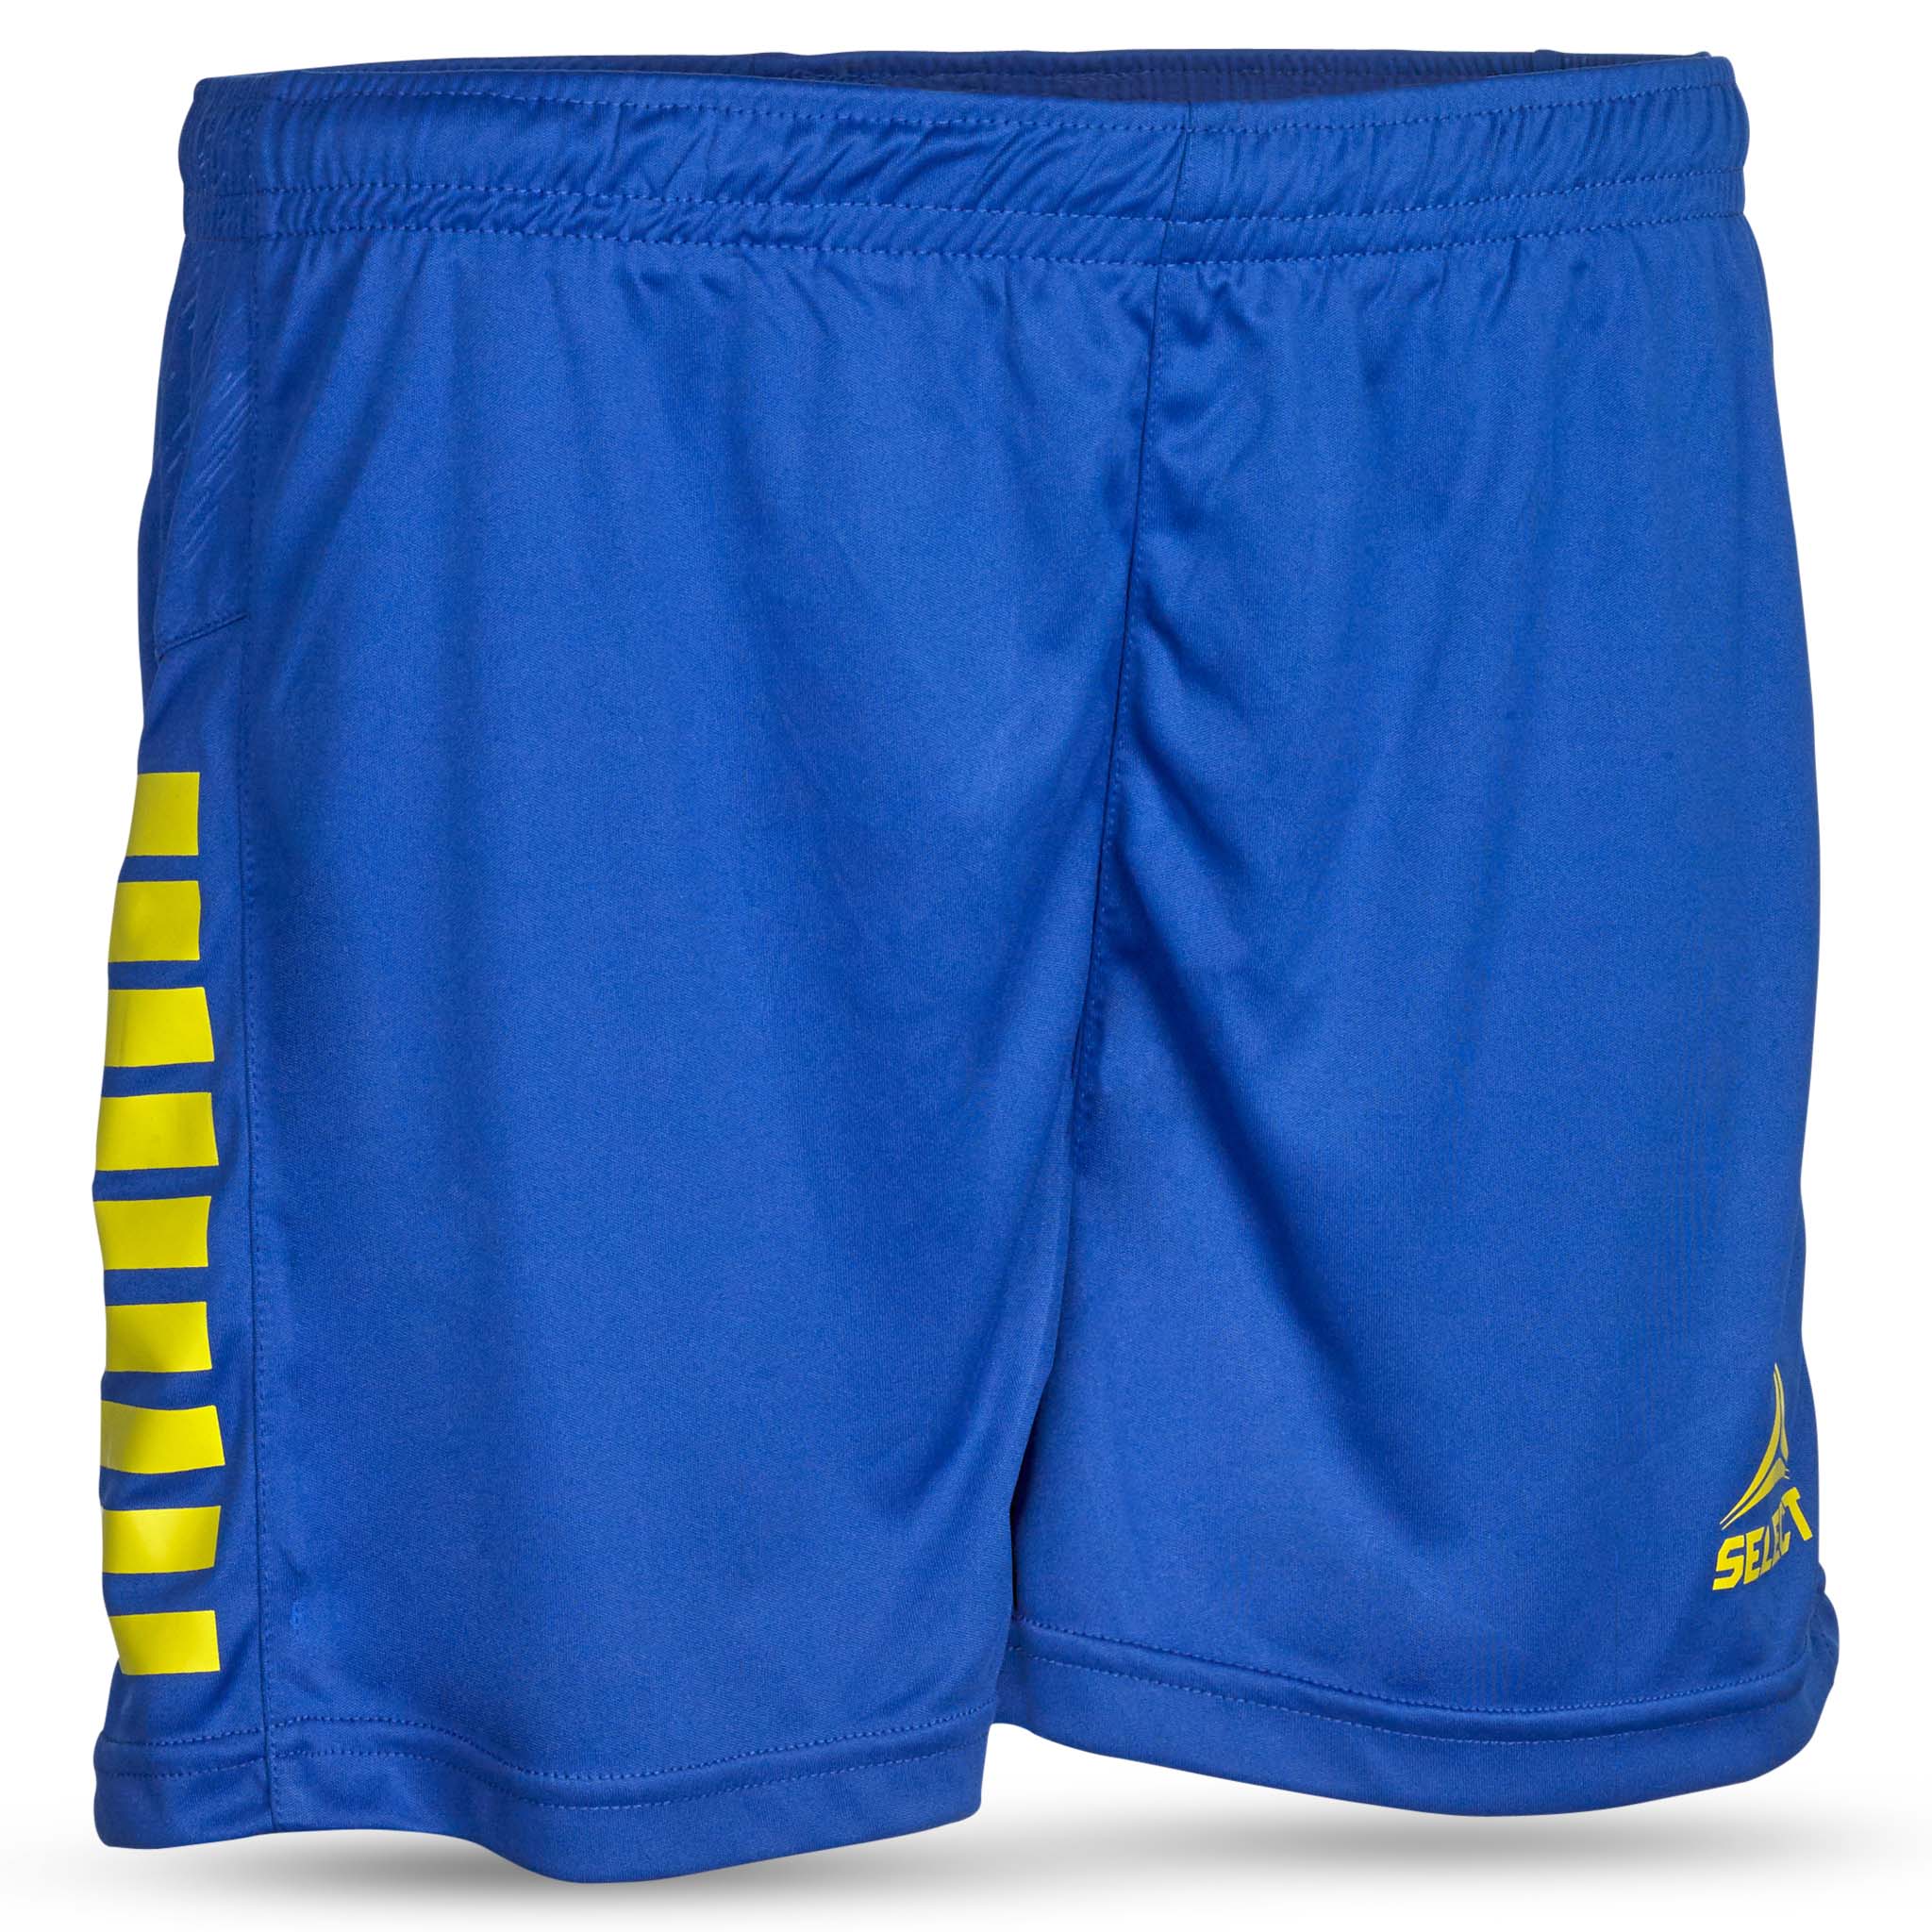 Spain Shorts - kvinner #farge_blå/gul